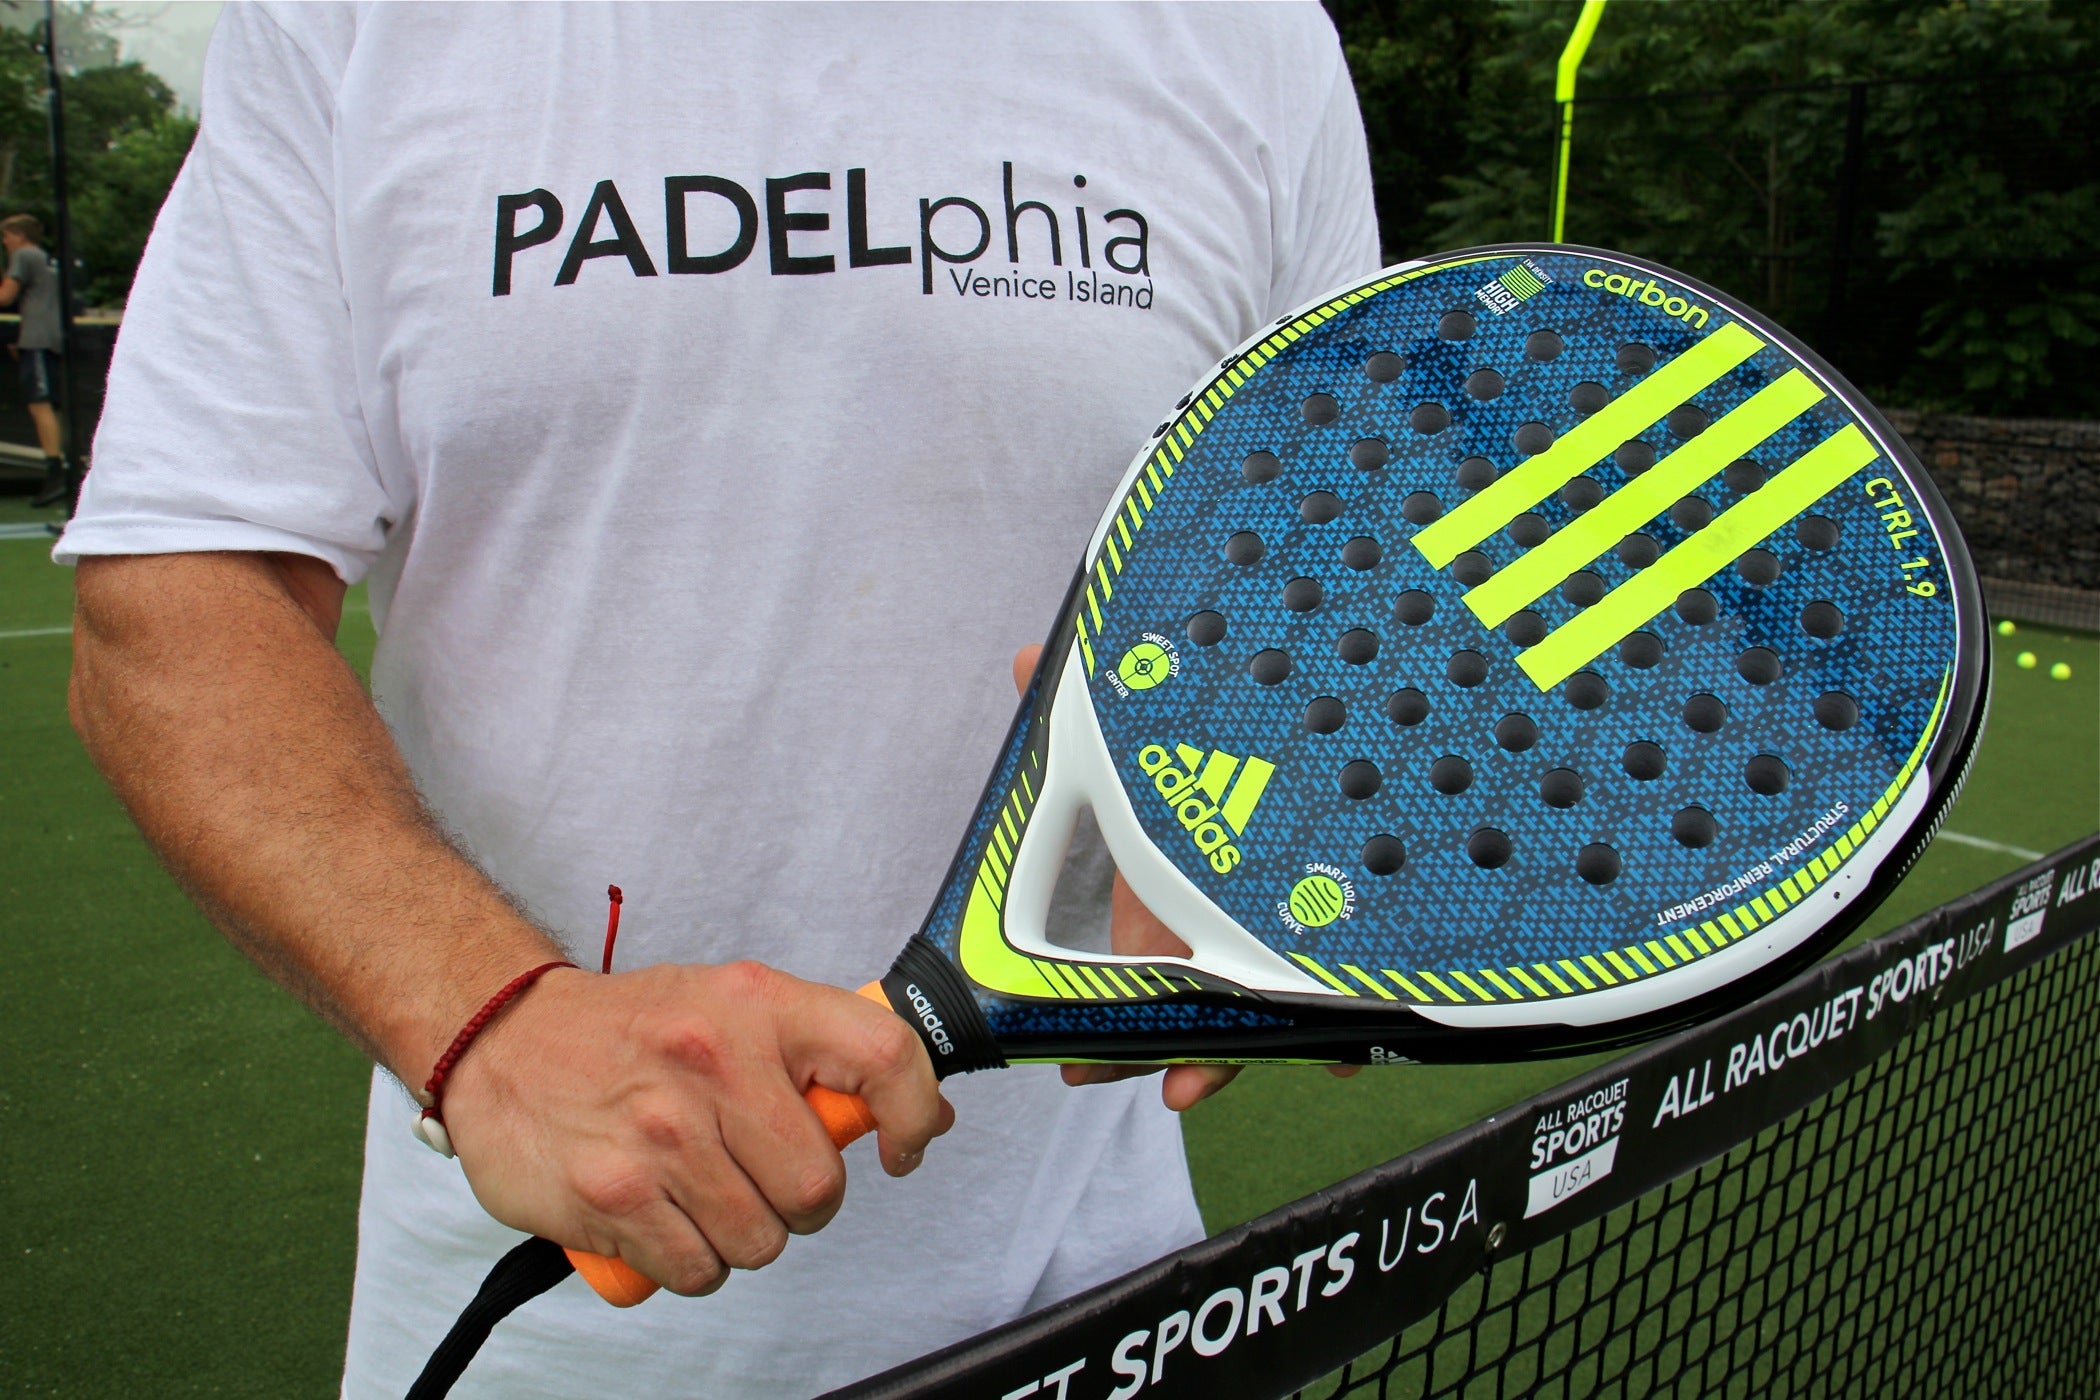 paddle tennis racket